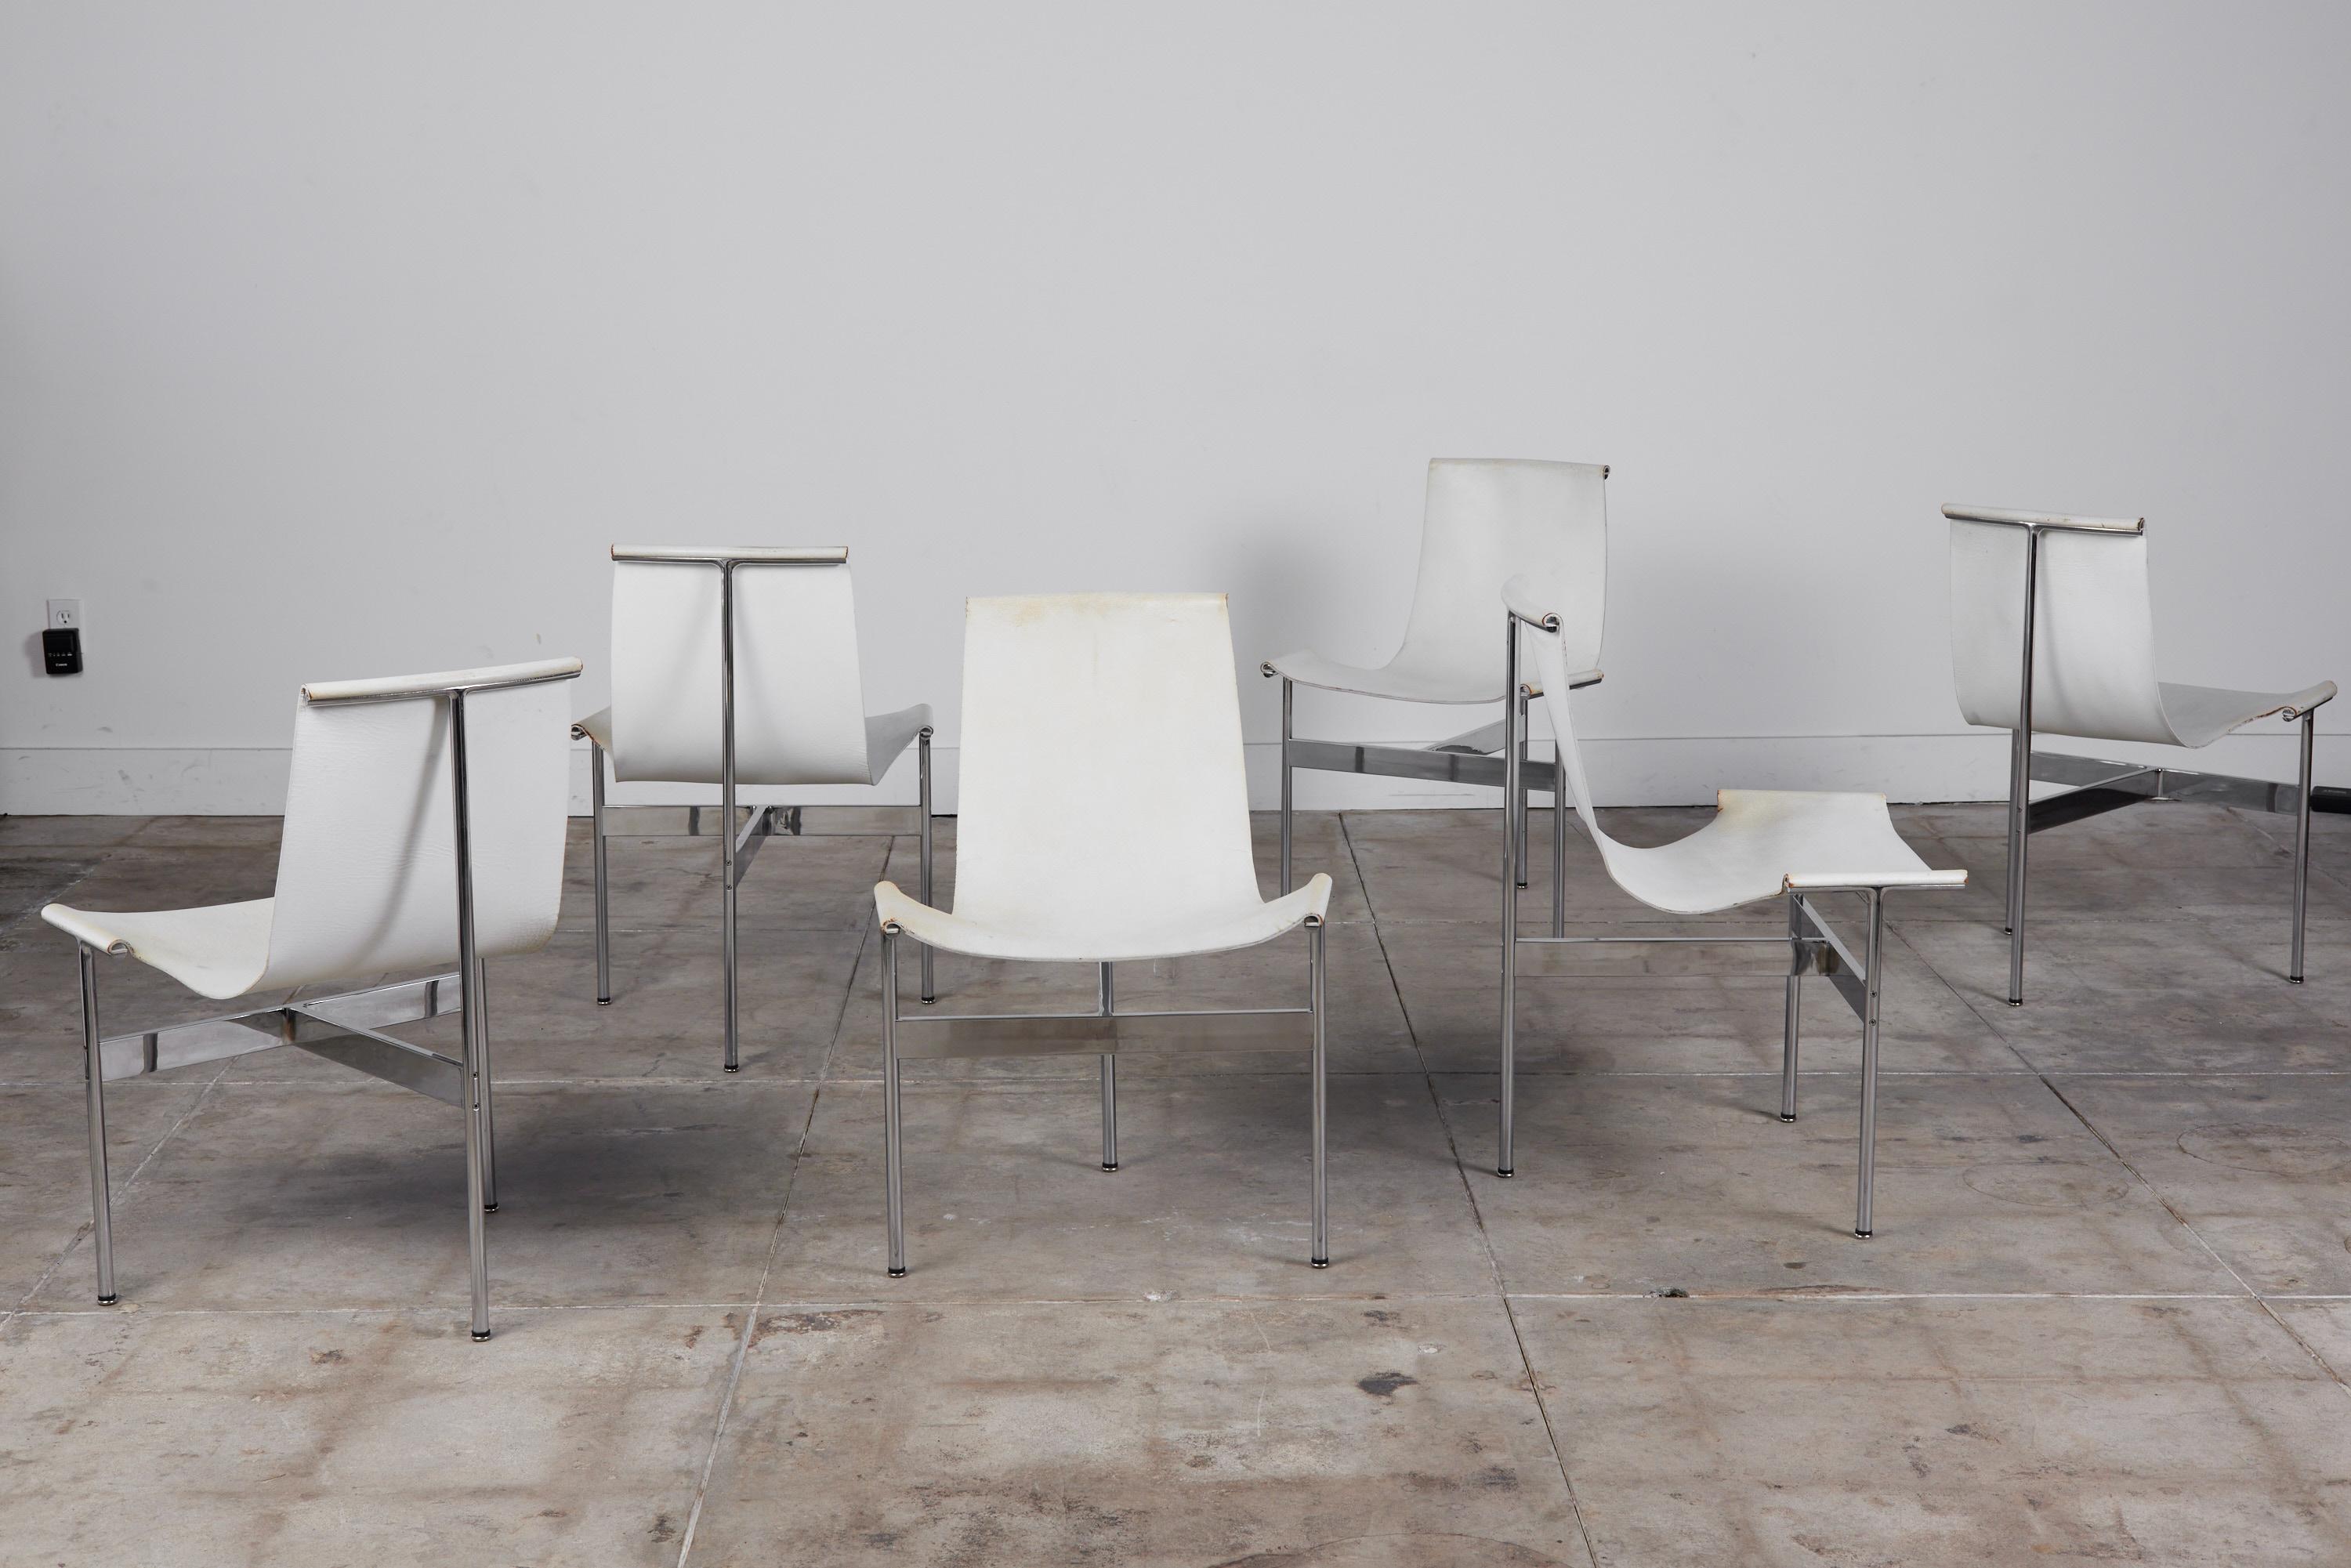 Ensemble de six chaises à trois pieds conçues par William Katavolos, Douglas Kelley et Ross Littell en 1952, États-Unis. Les chaises T iconiques à dossier incliné sont dotées d'un cadre et de pieds en acier chromé avec des barres transversales en